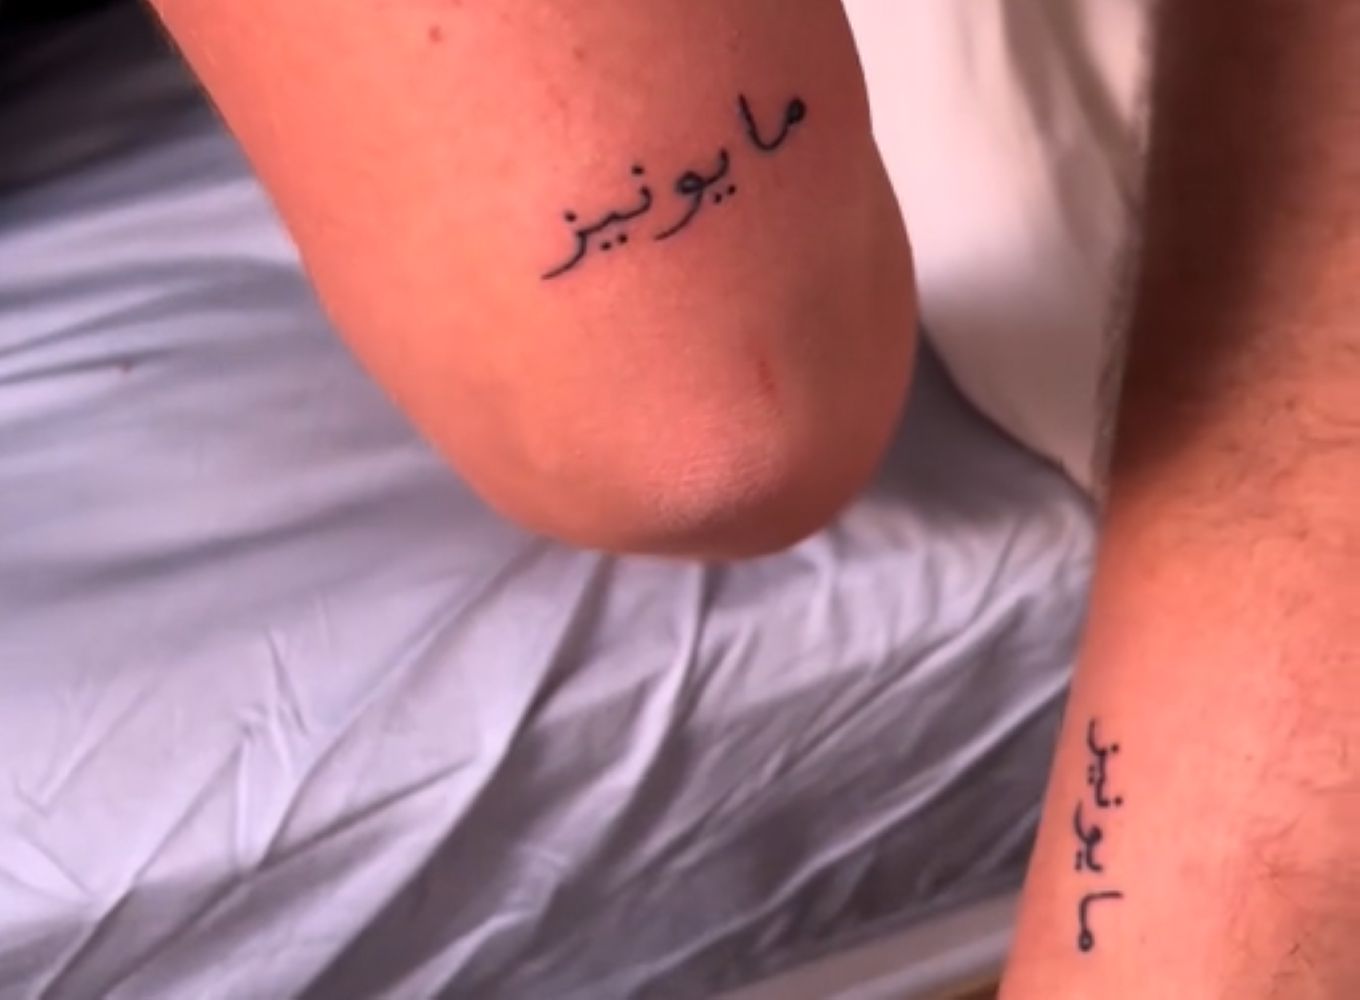 Un turist și-a făcut un tatuaj în Maroc.  Internetul este plin de râsete